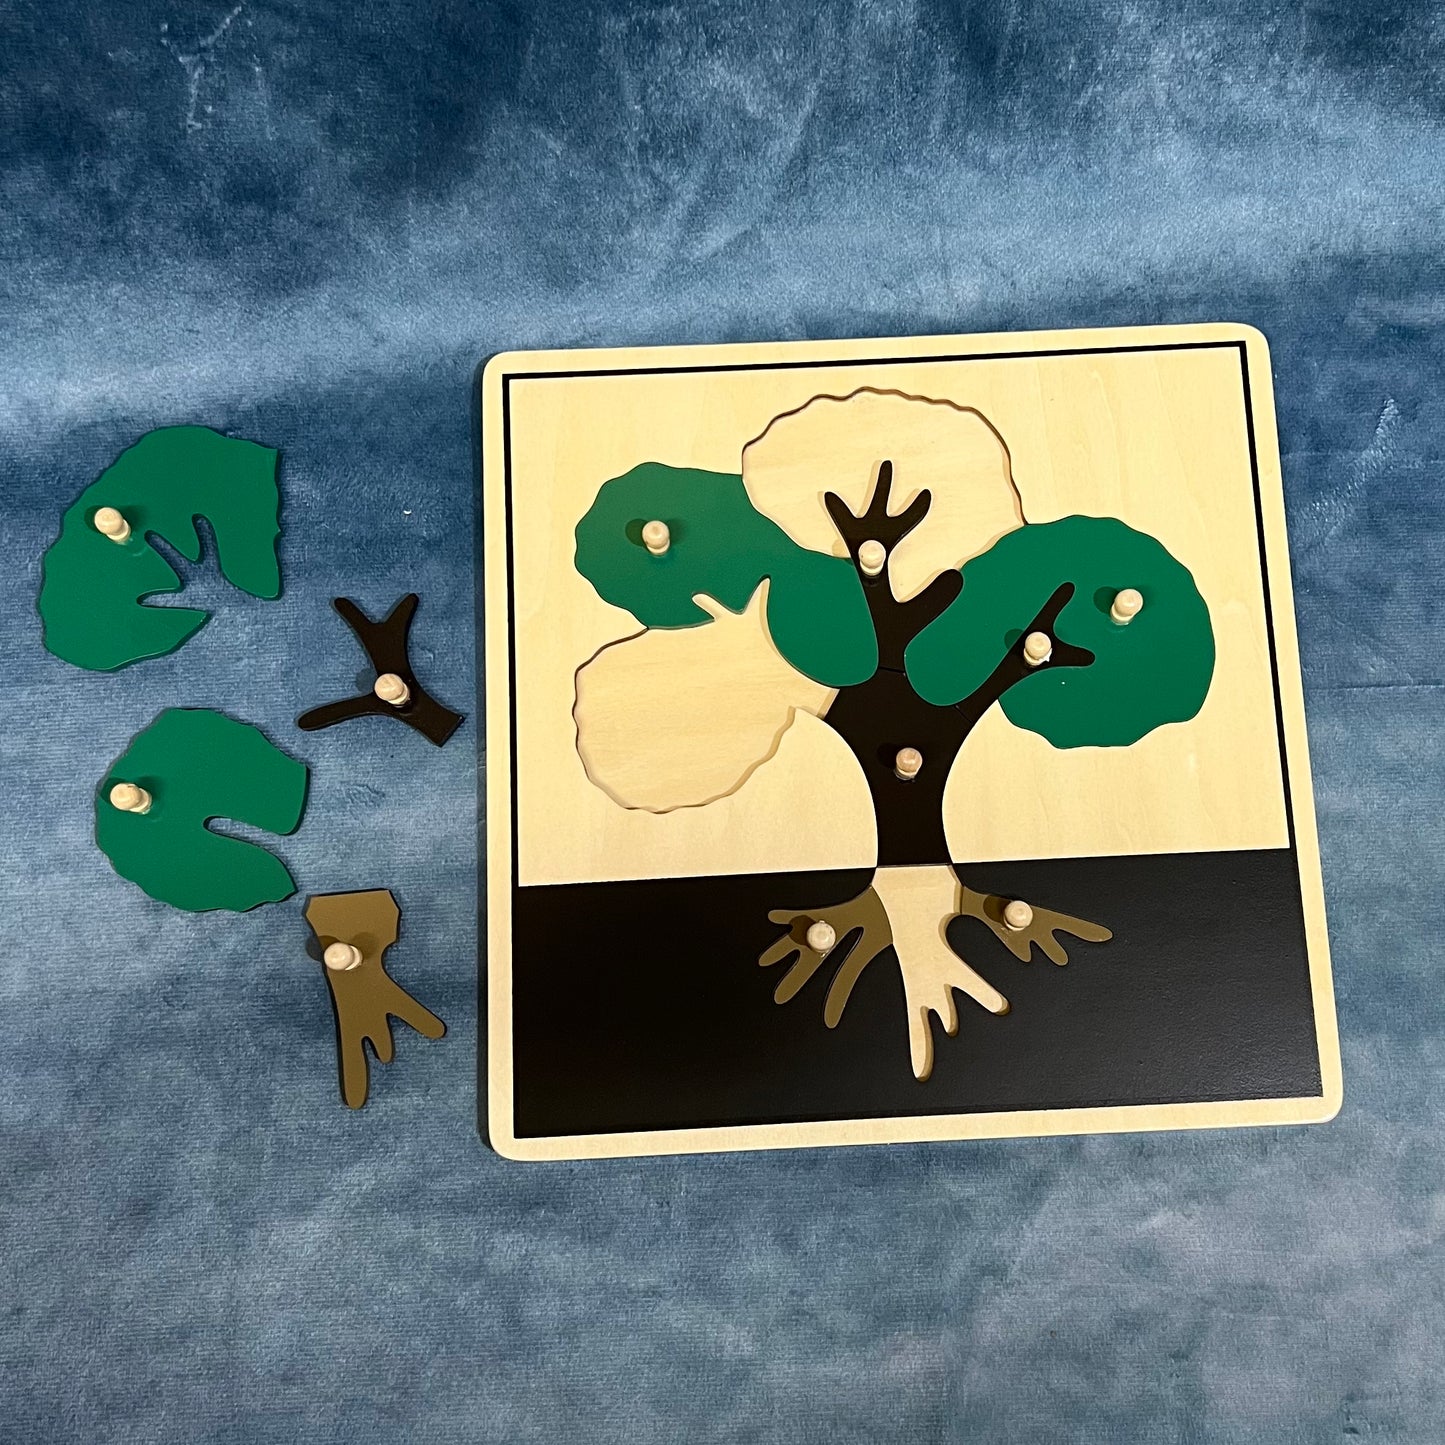 Tree puzzle